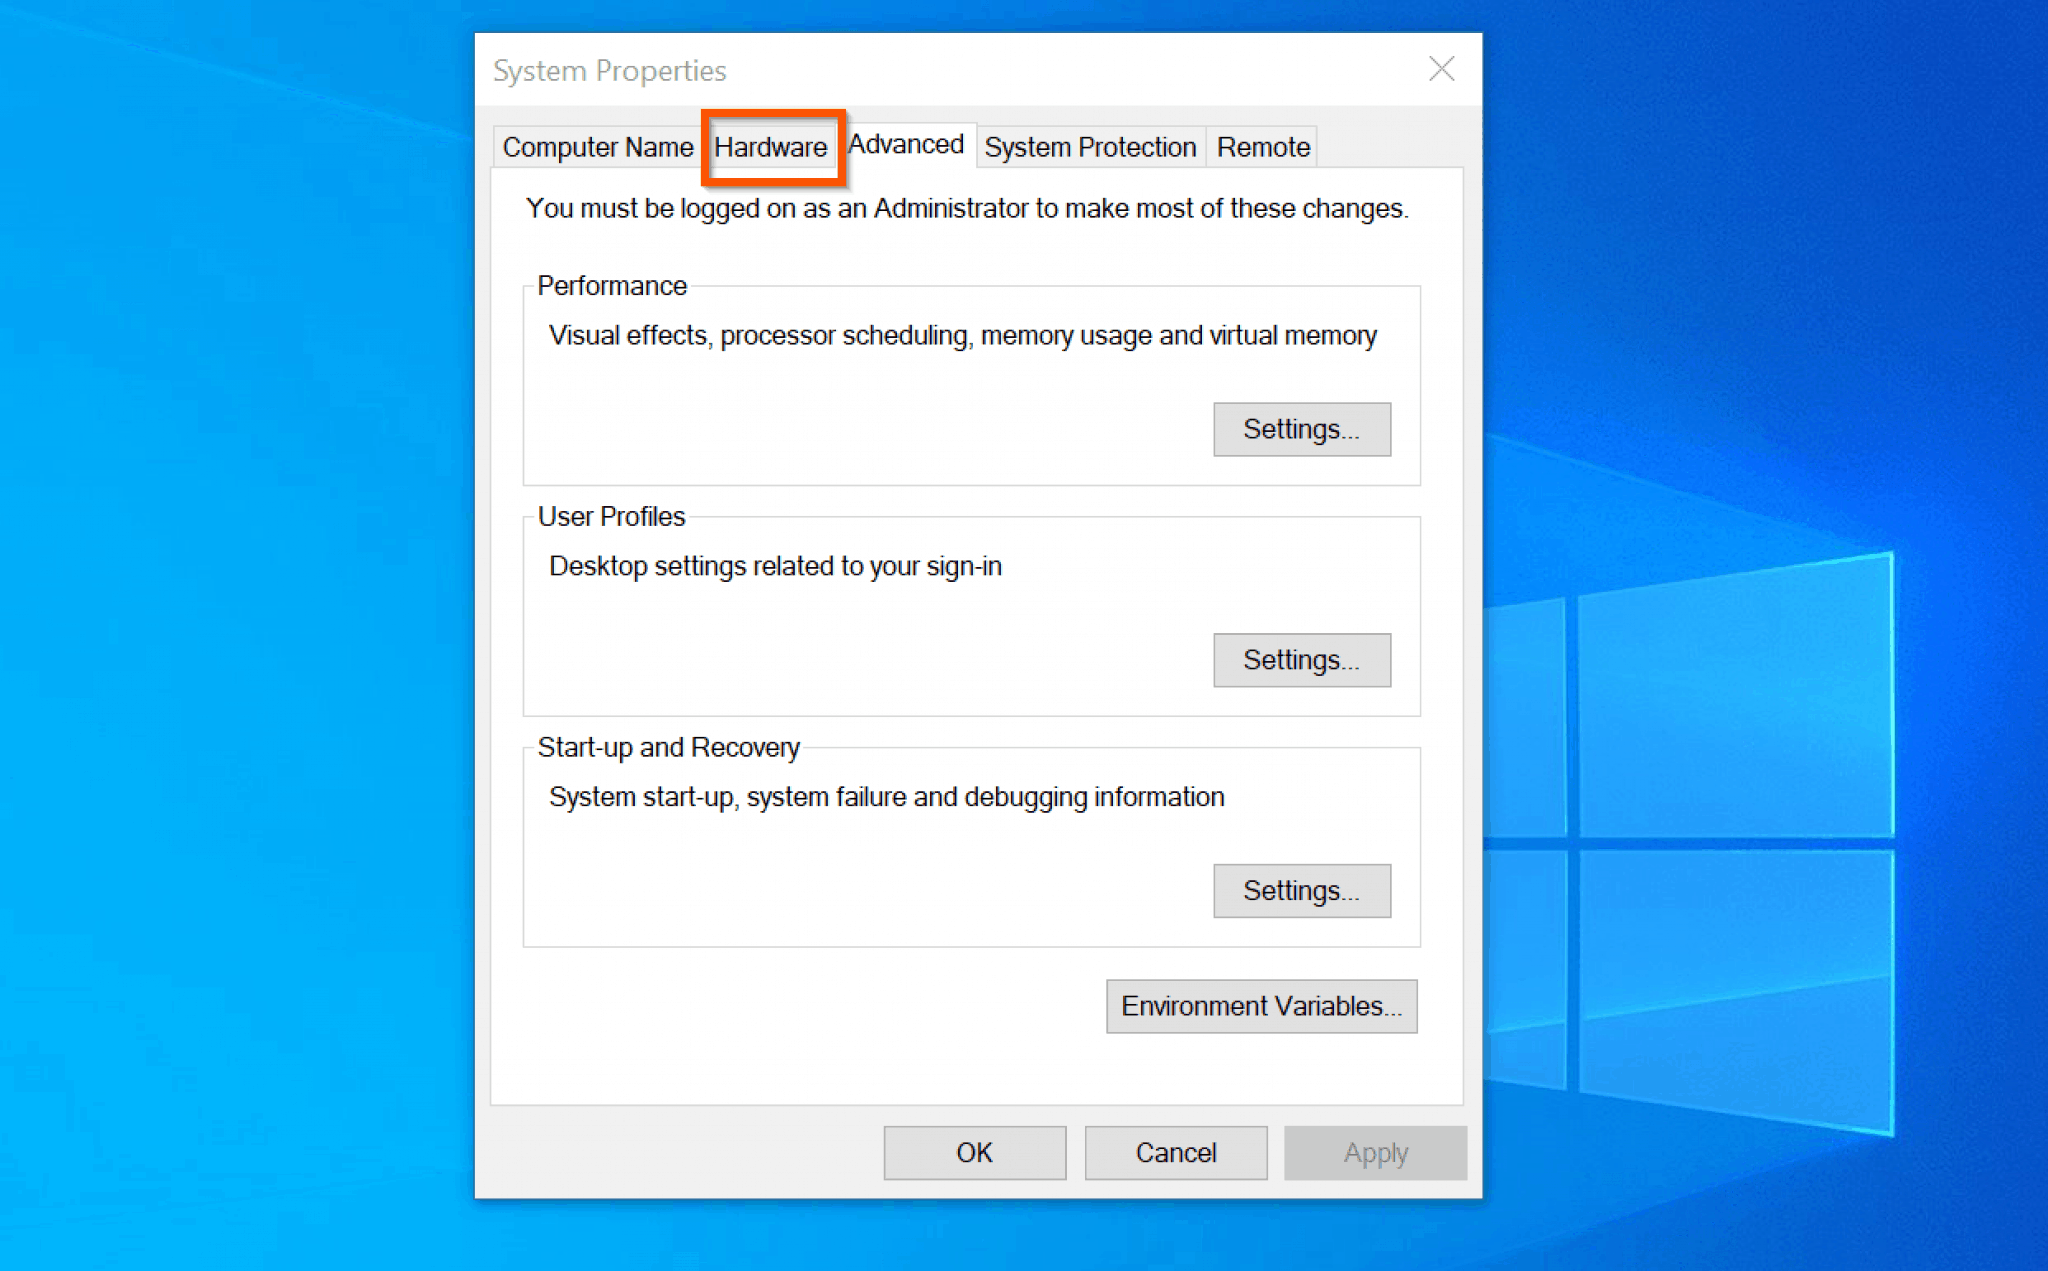 windows 10 audio services not responding